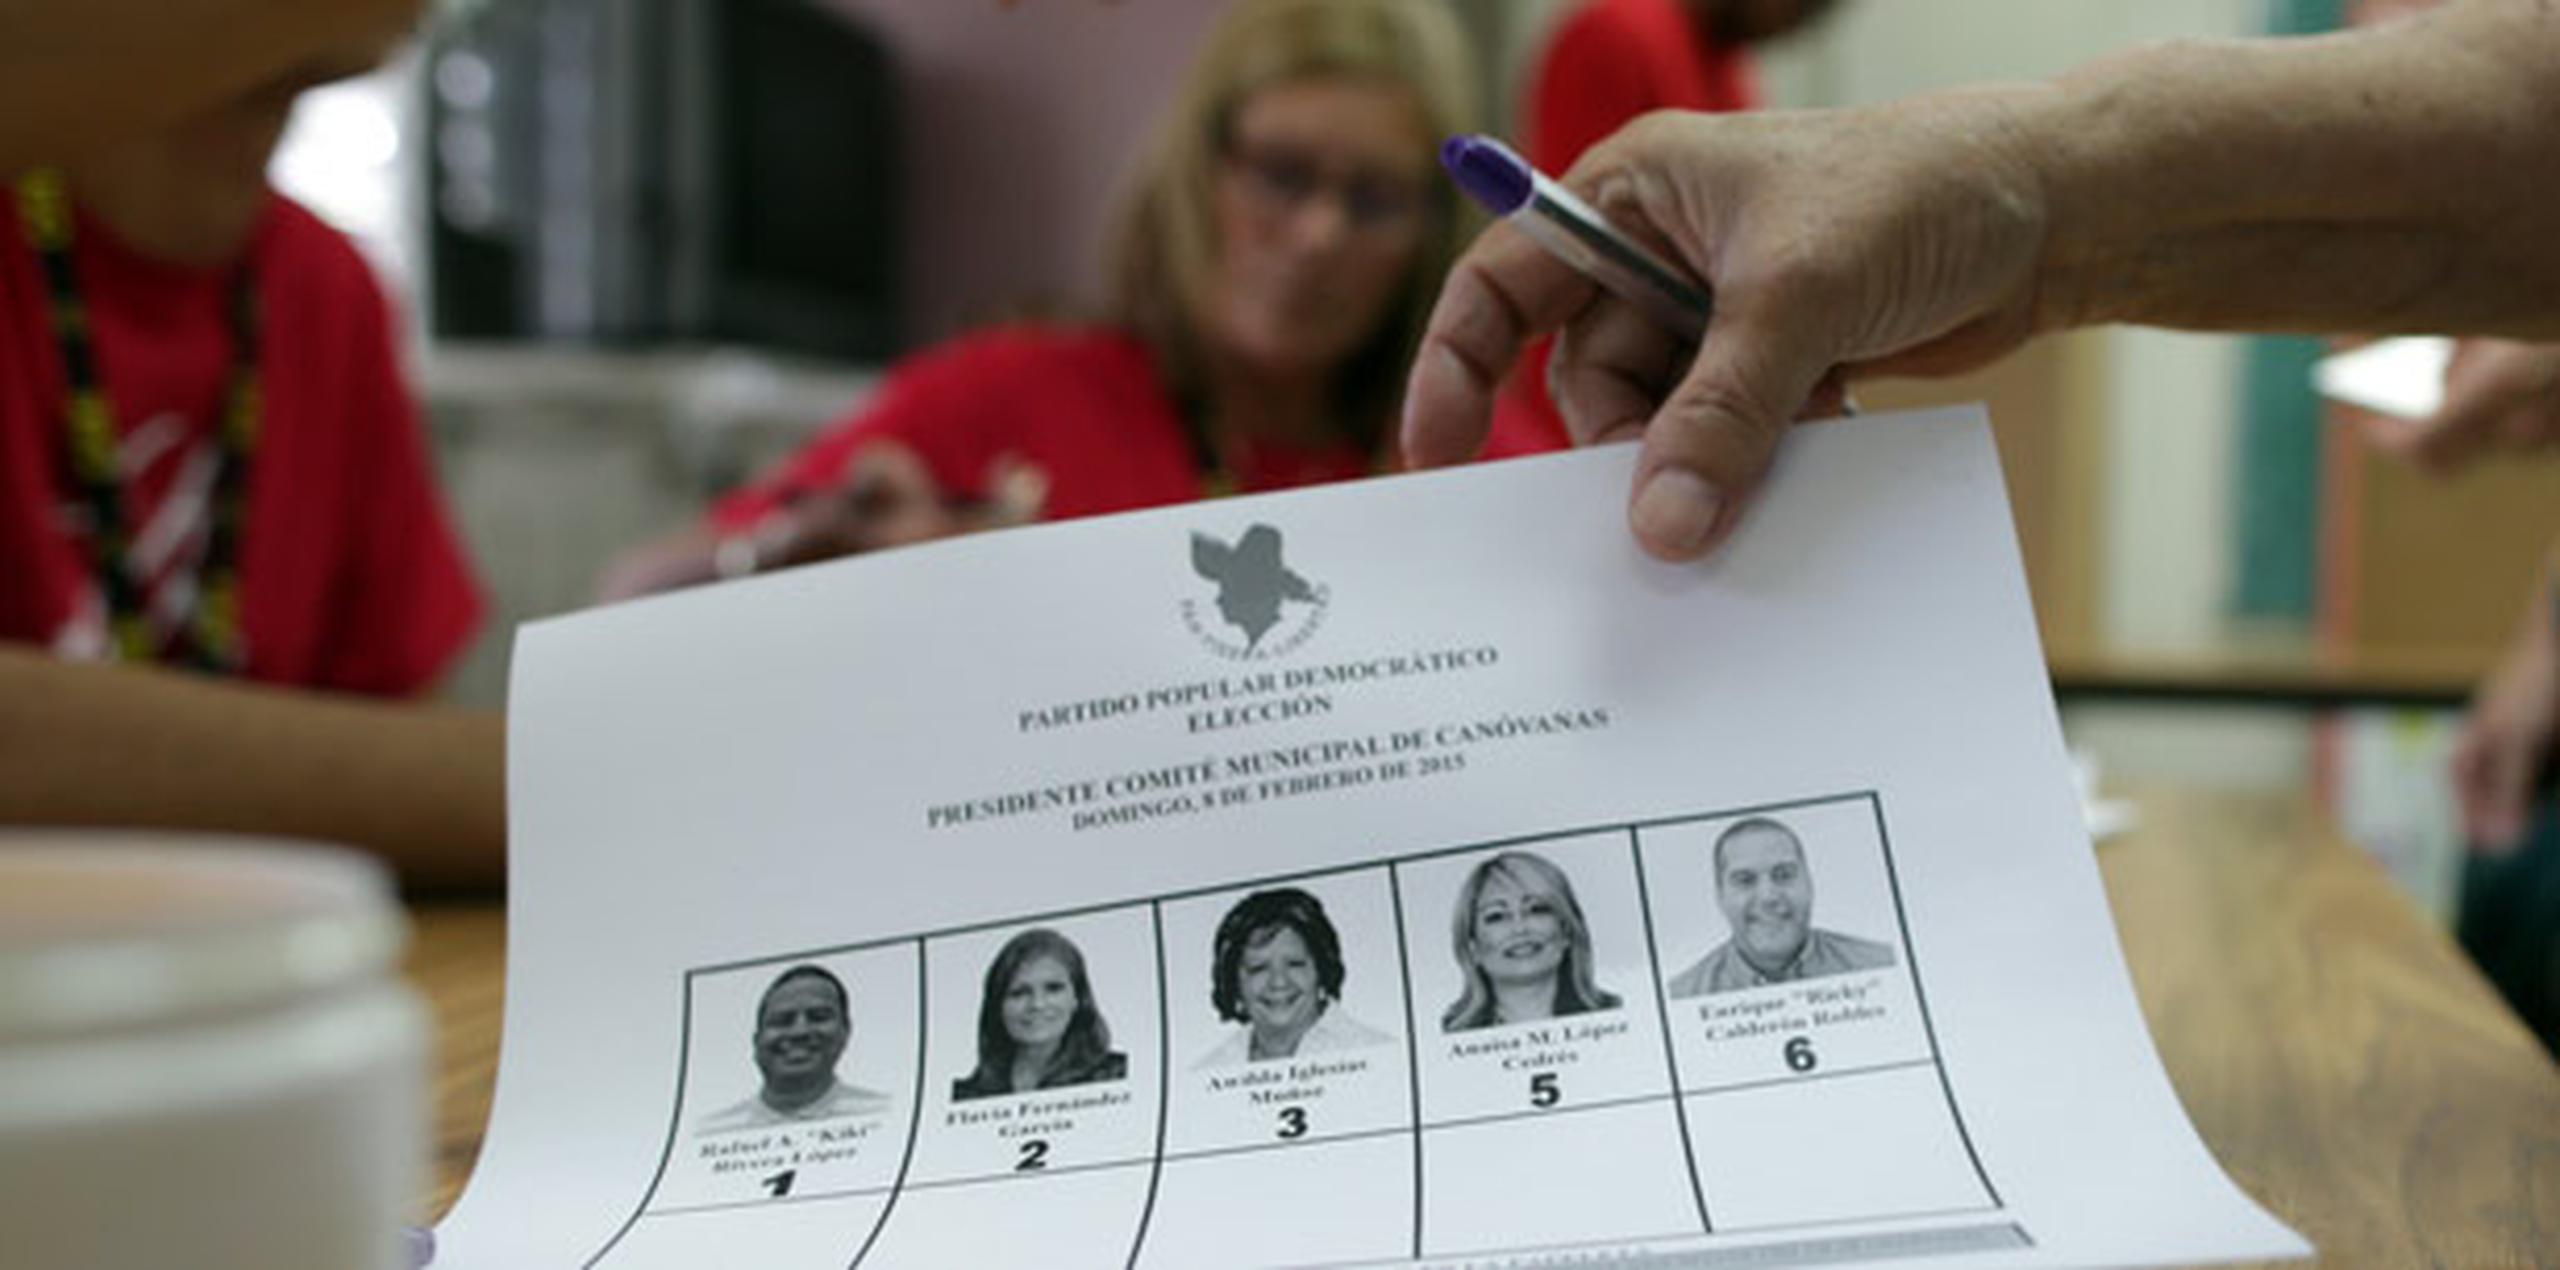 Unos 1,904 electores participaron hoy de la primaria popular en Canóvanas. (juan.alicea@gfrmedia.com)